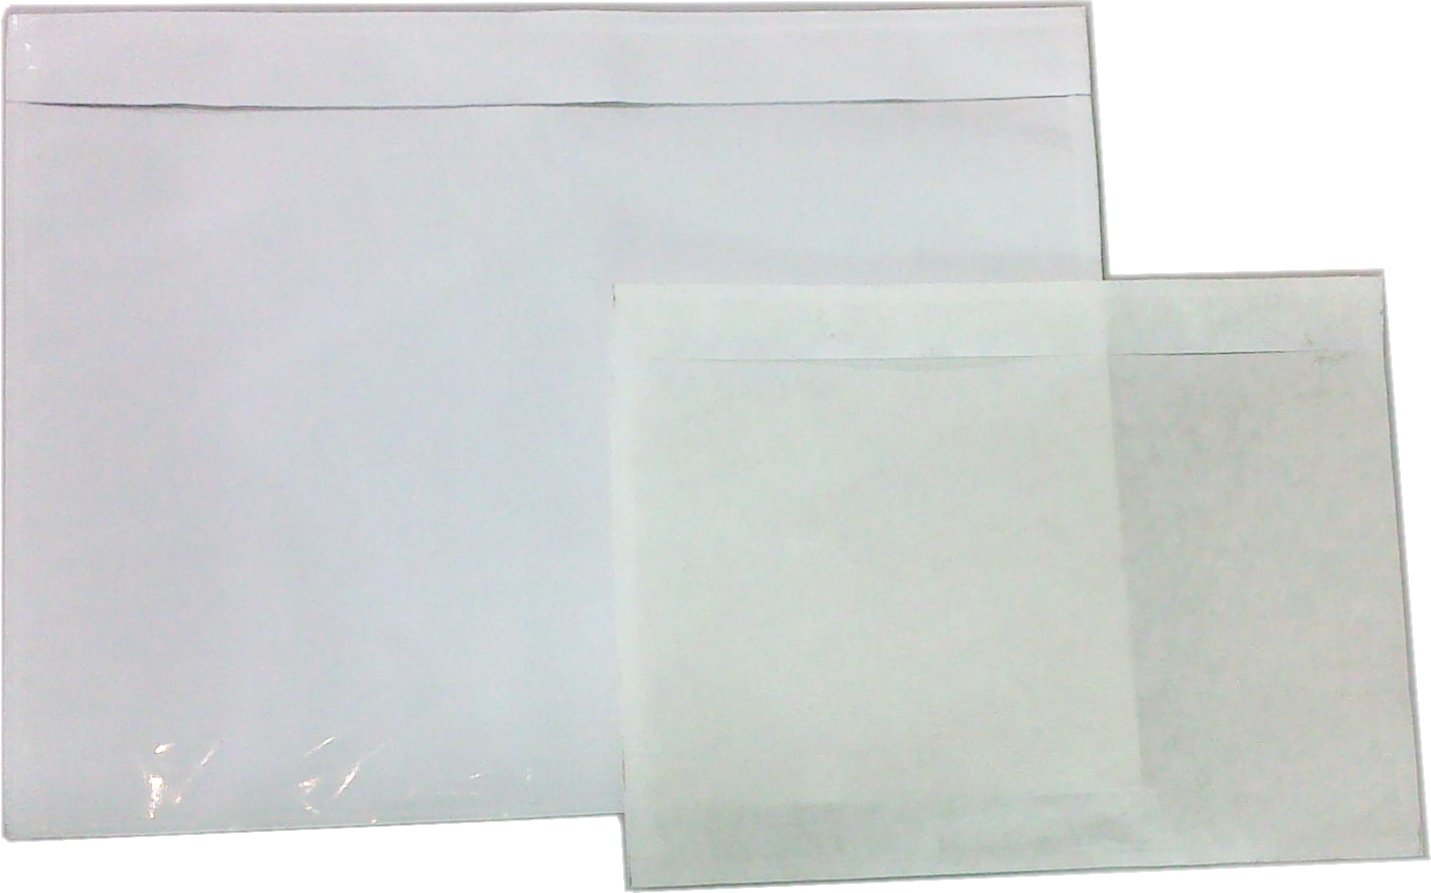 5.5 X 10 Blank Packing List
Envelopes, Back Load -
(1000/cs)